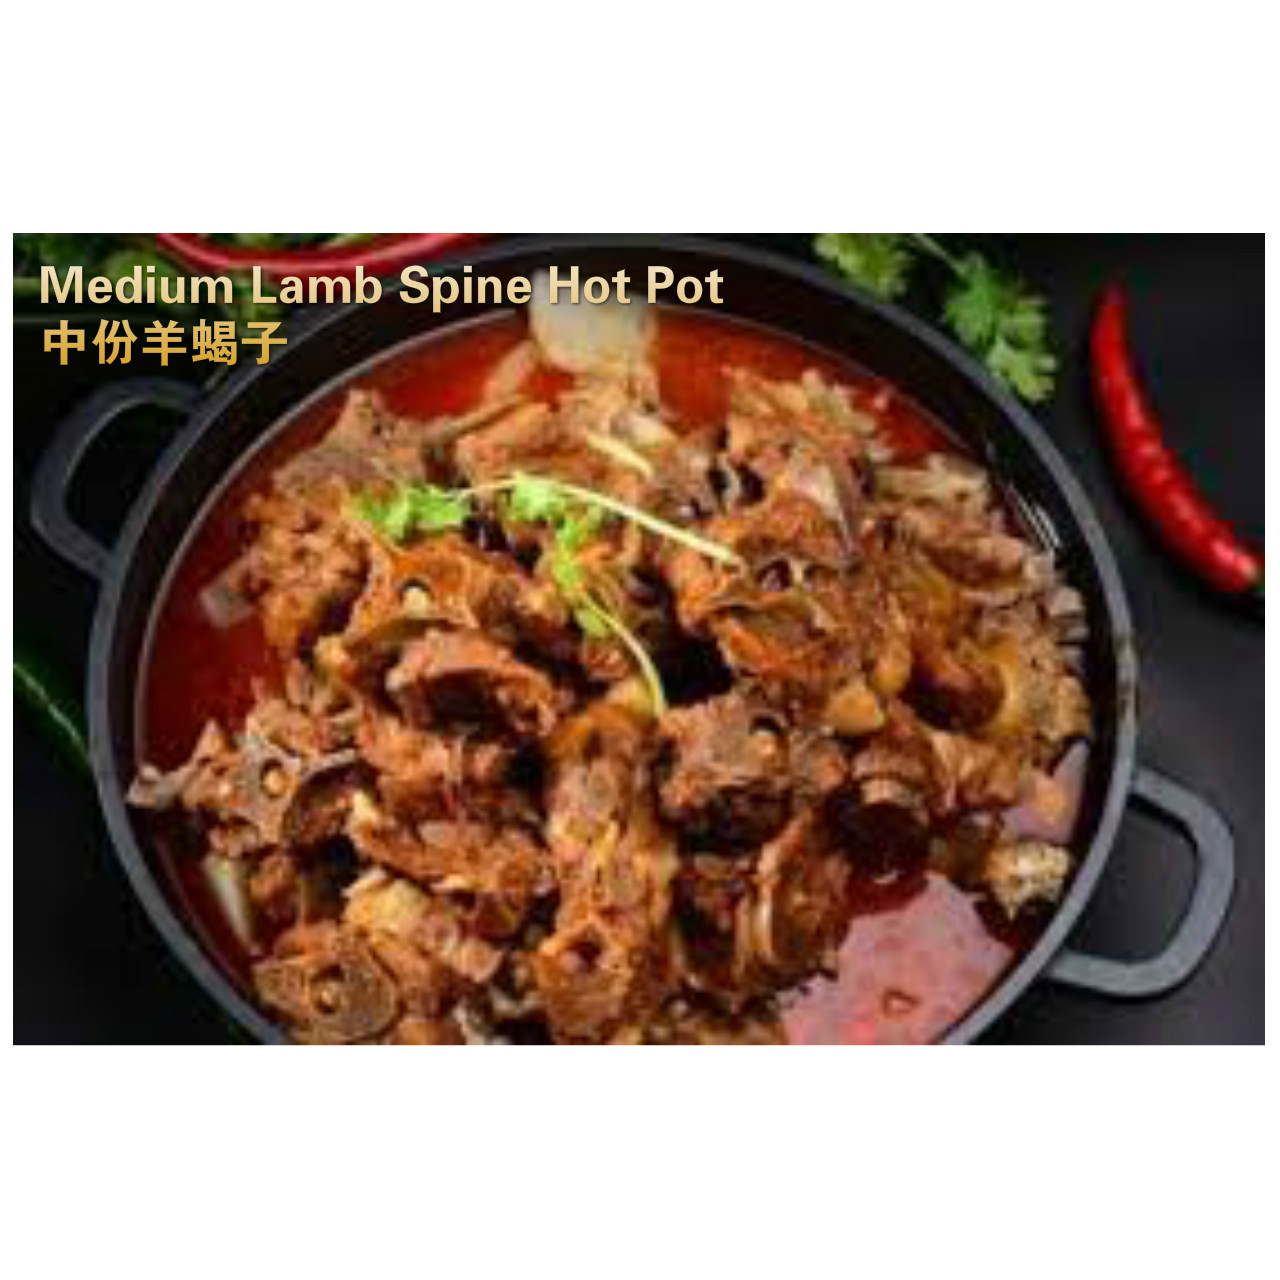 Medium lamb spine hot pot (lamb spine, lamb leg bones)